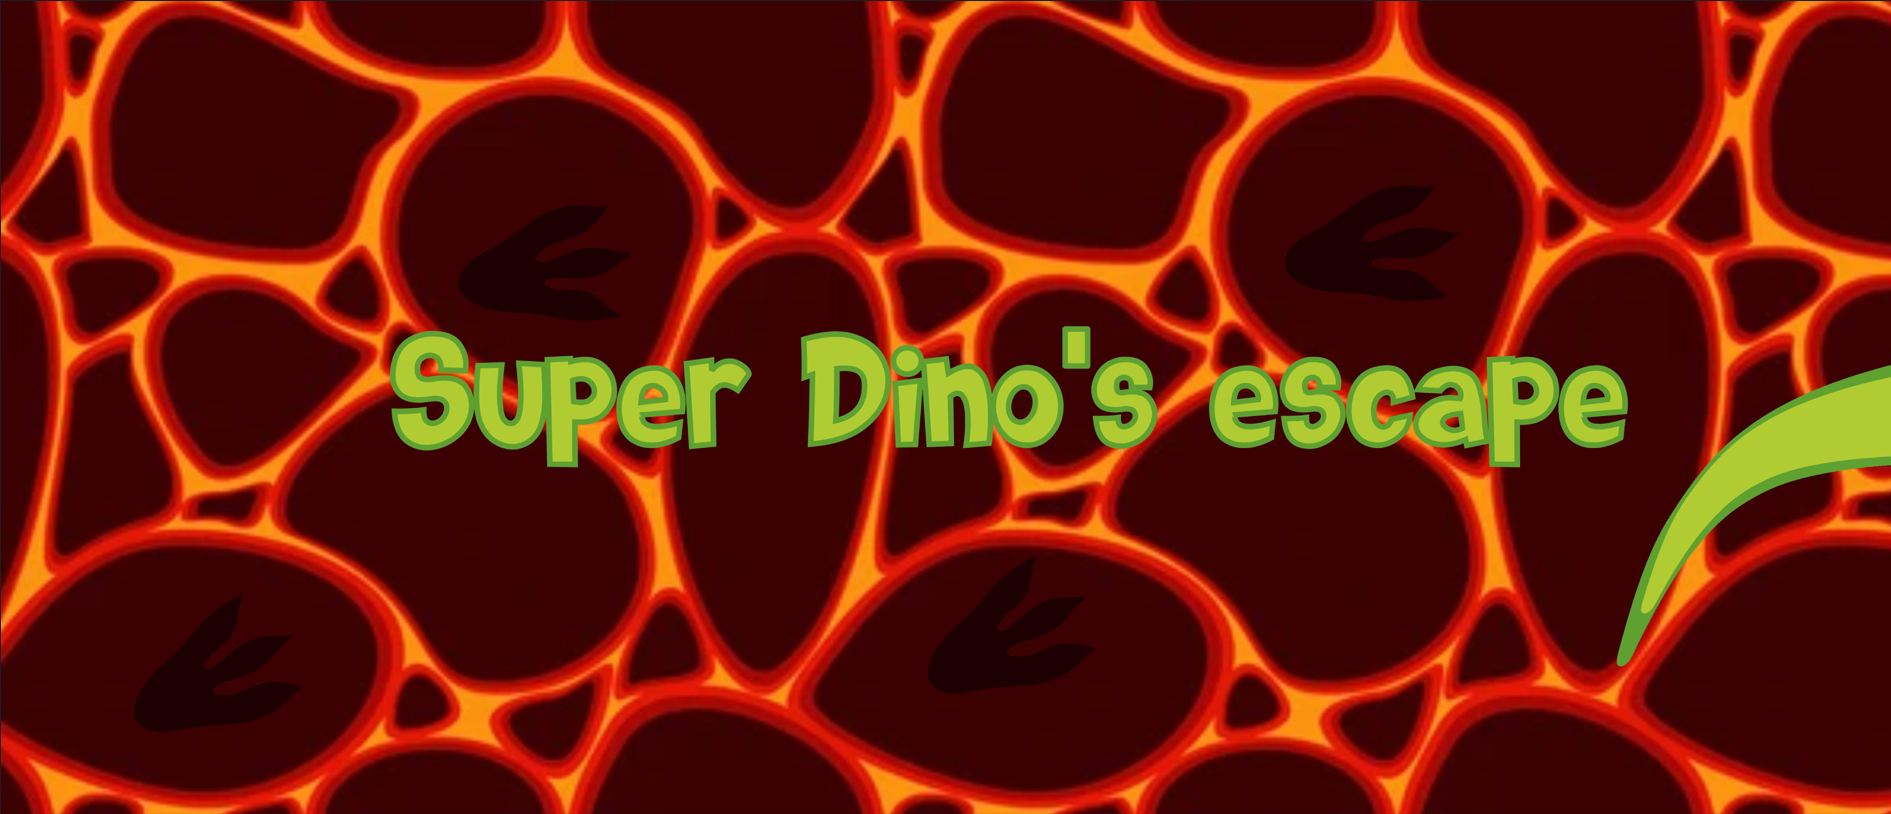 Super Dino Escape